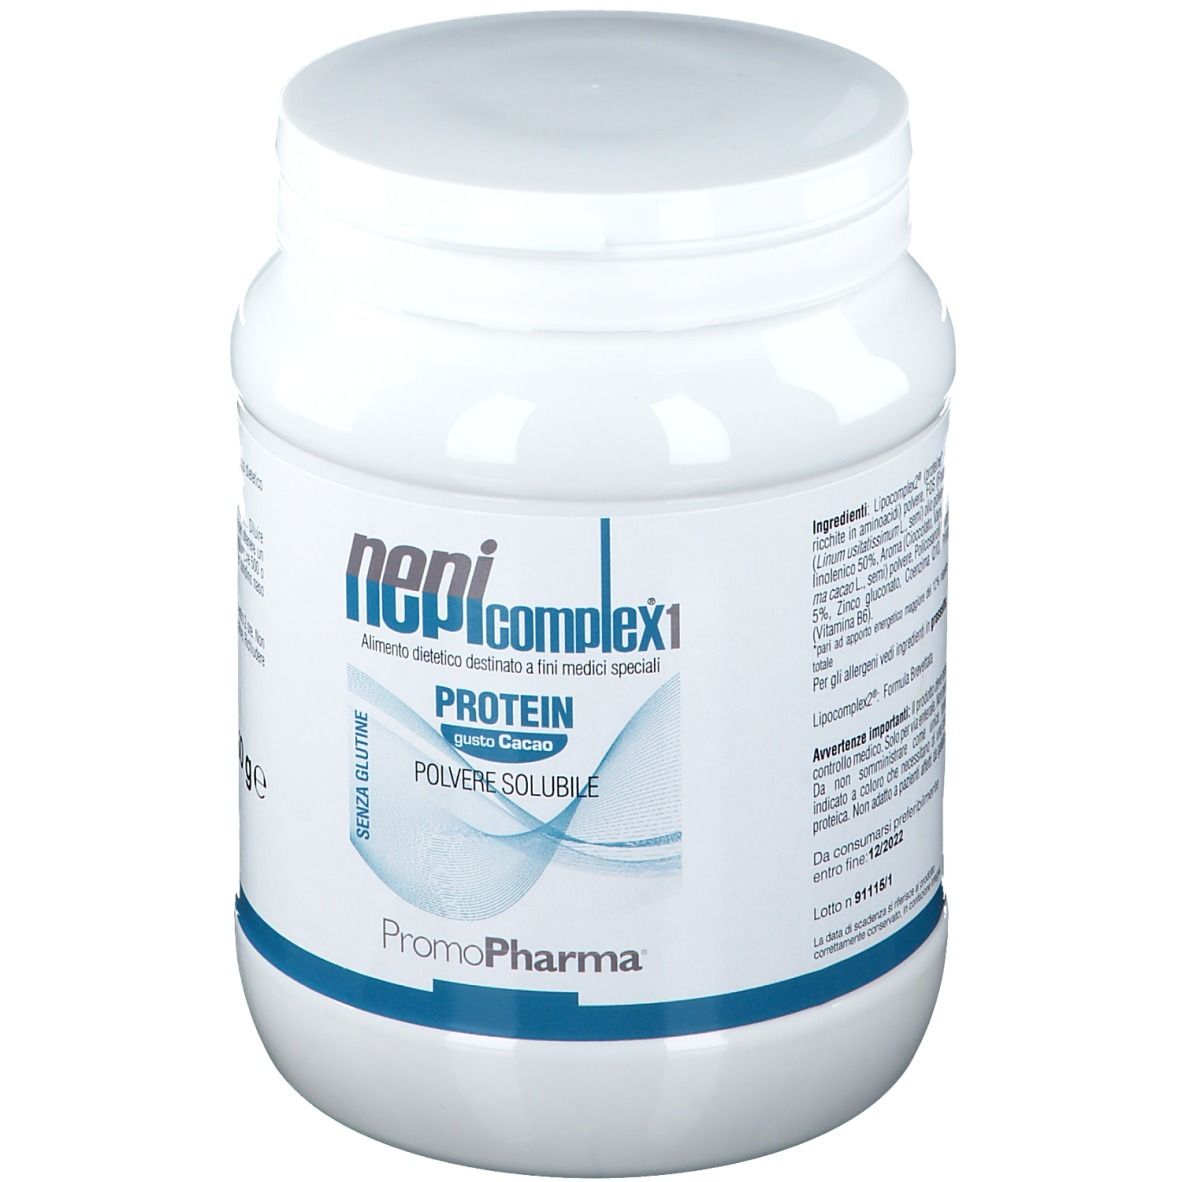 Nepicomplex®1 Protein